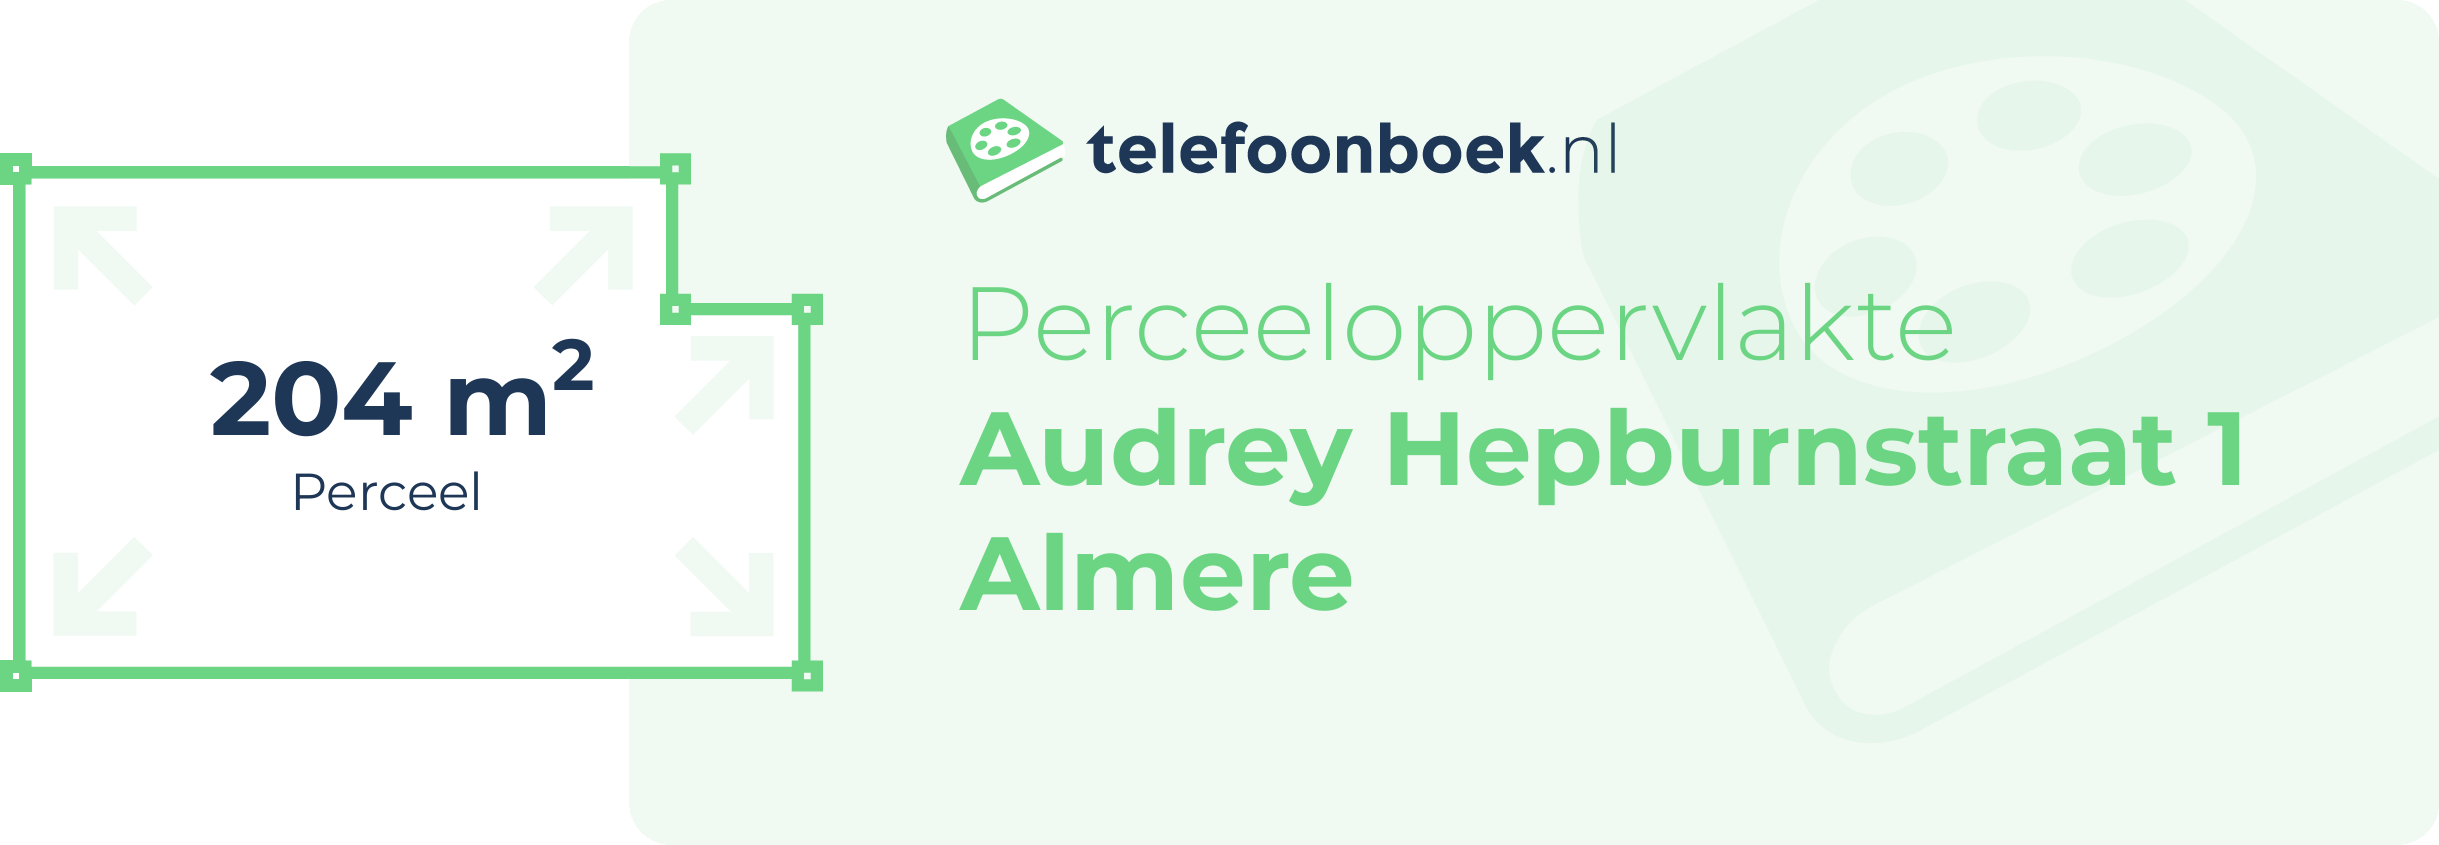 Perceeloppervlakte Audrey Hepburnstraat 1 Almere